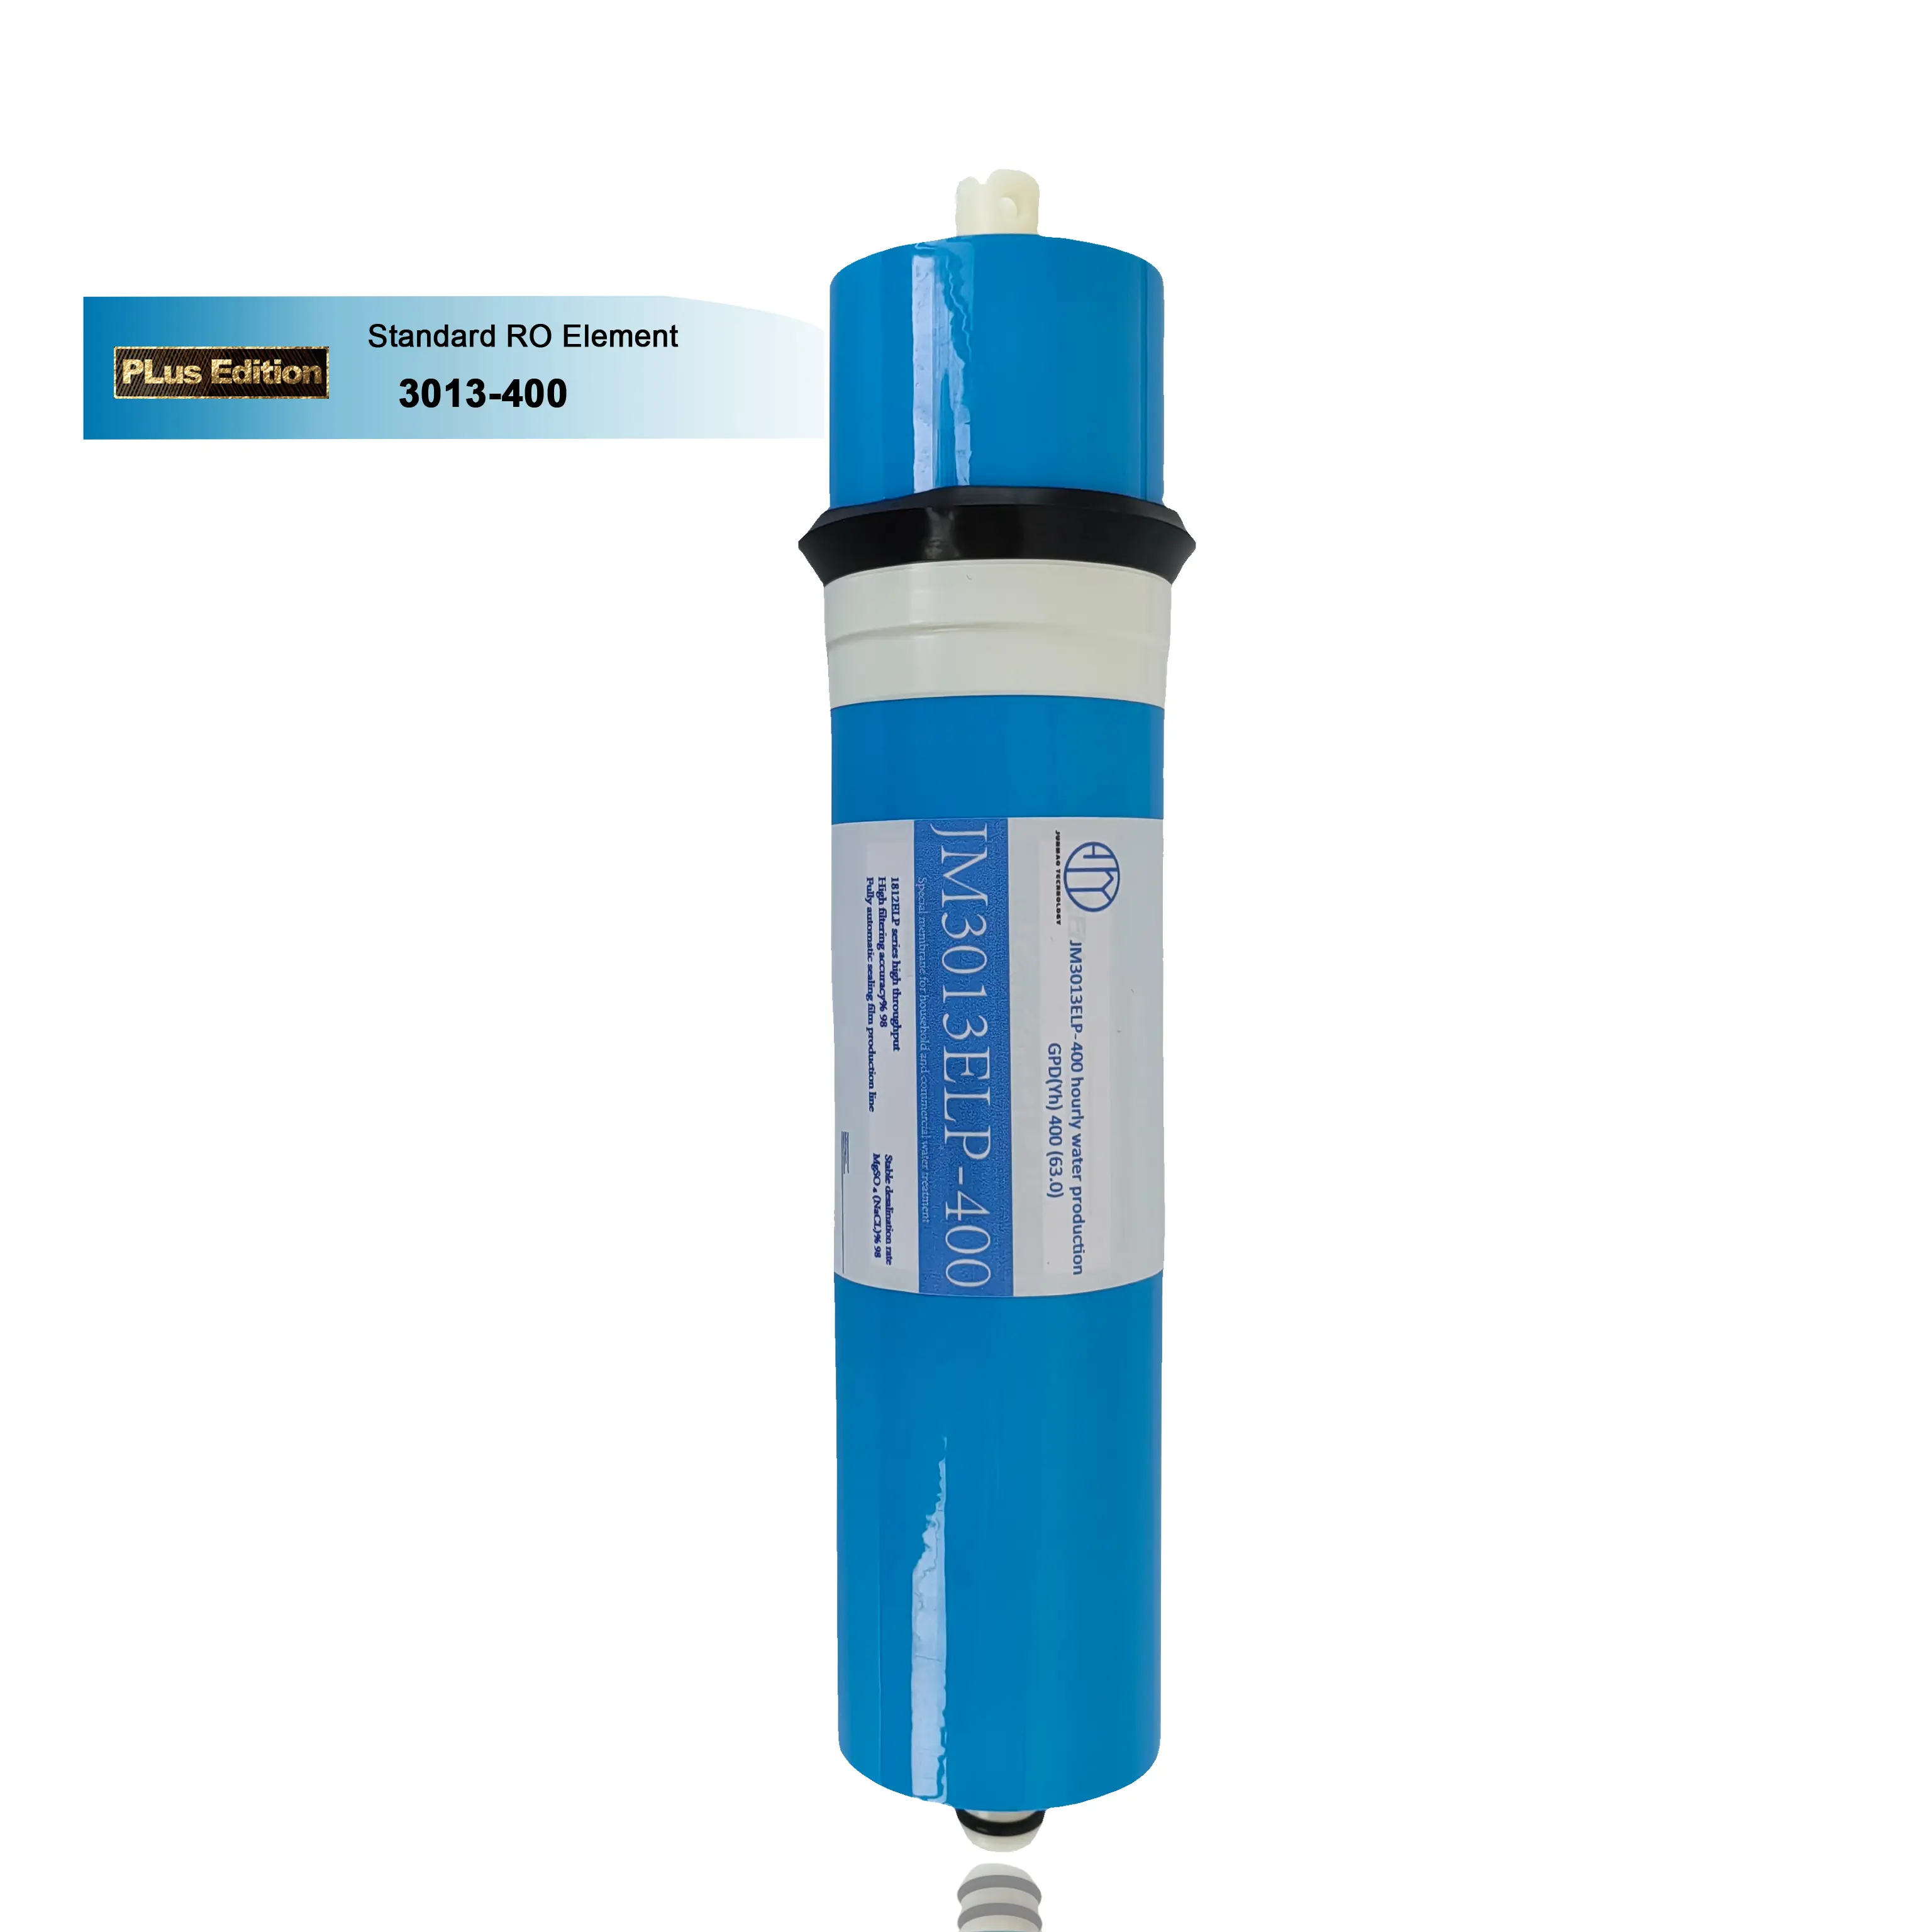 A PLusEdition 3013 400GDP filtro de membrana ro doméstico behalter para maquinaria de tratamiento de agua Uso doméstico membrana ro